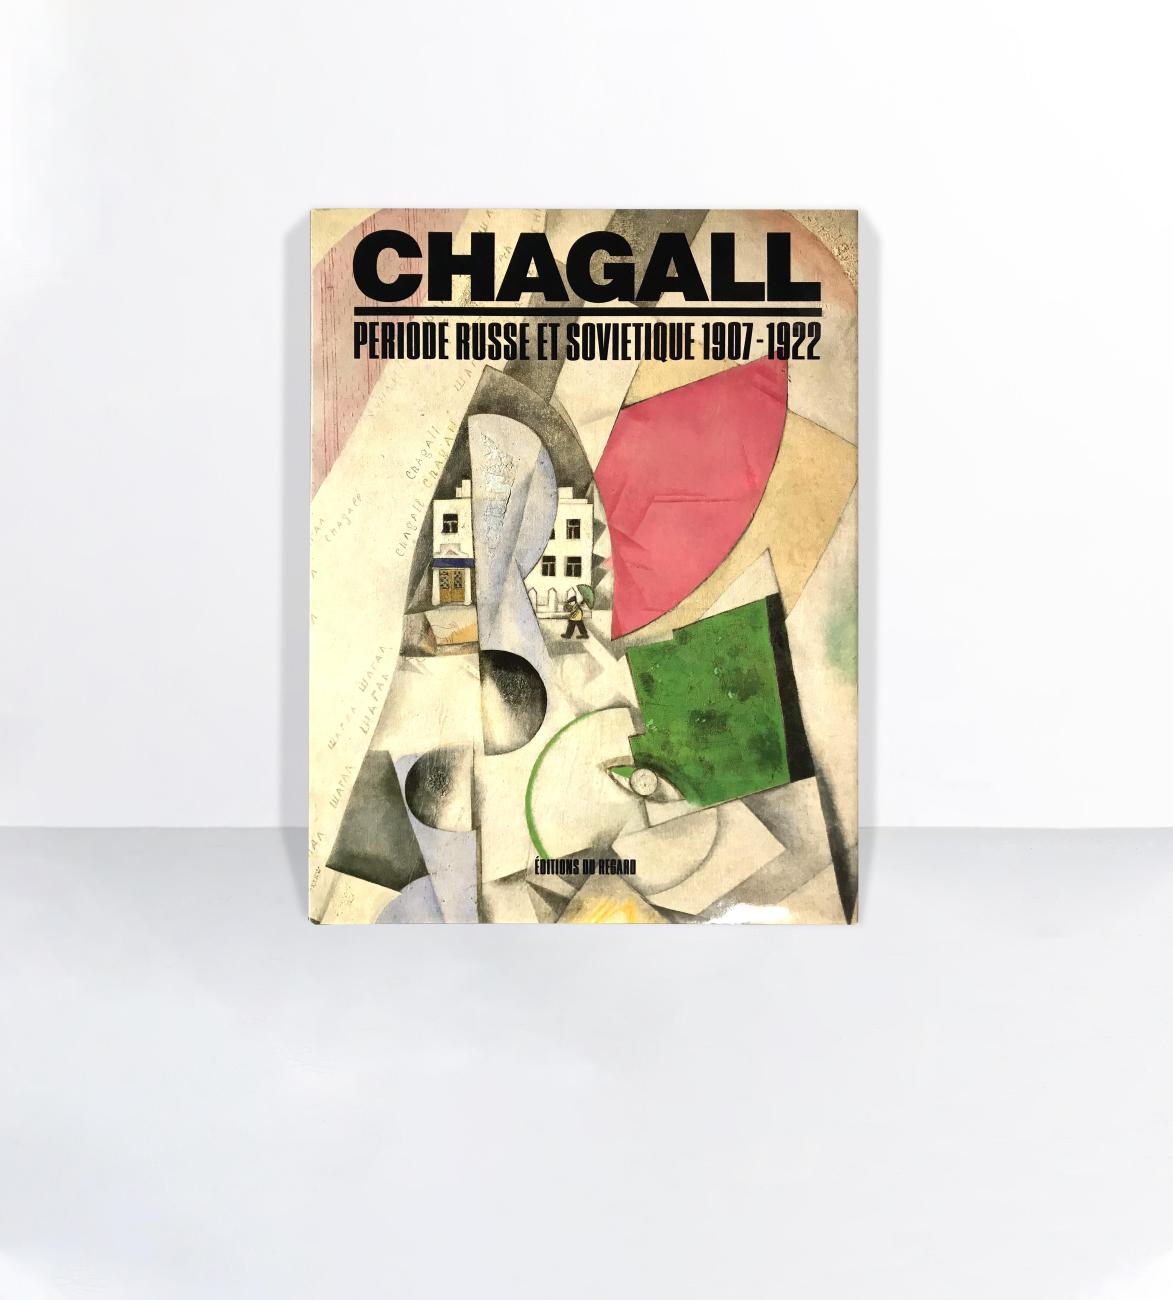 Chagall : période russe et soviétique, 1907-1922